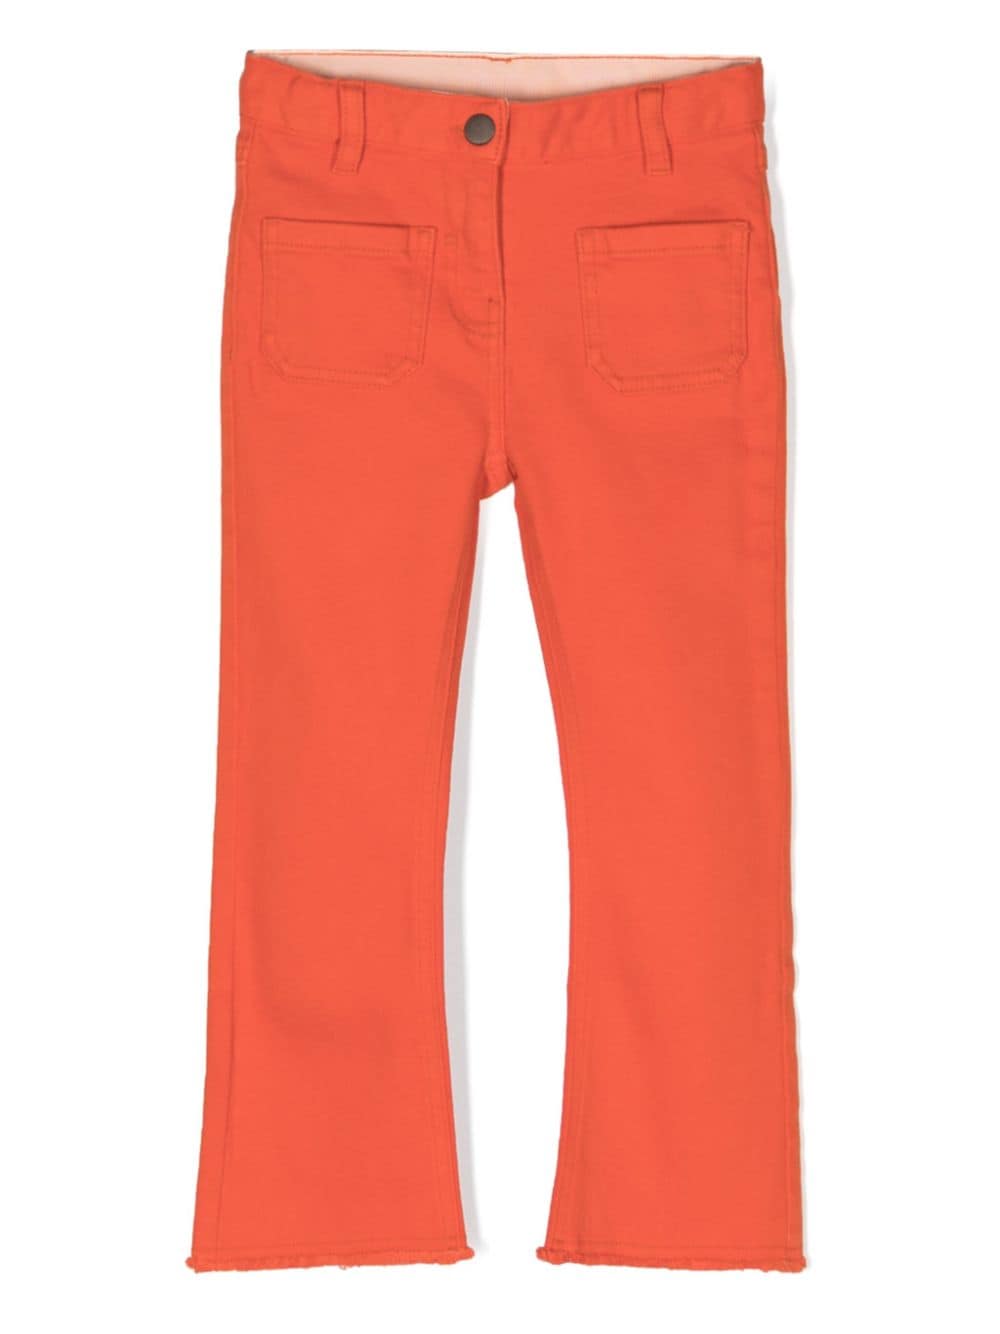 Orange jeans for girls